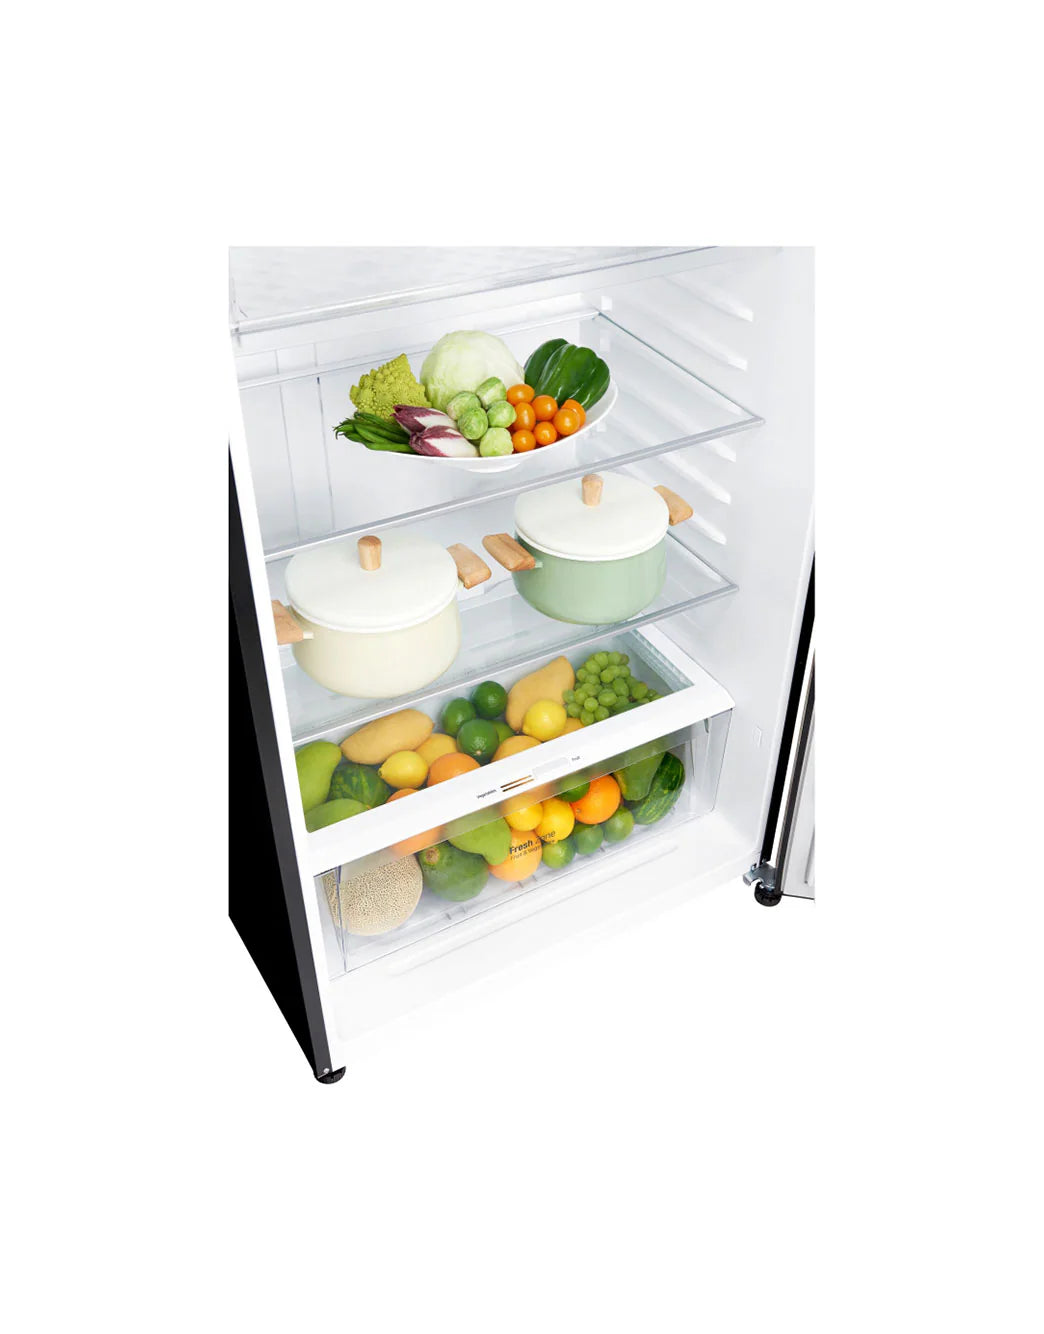 LG Refrigerator GN-C702SGGU with Inverter Linear Compressor & DoorCooling+